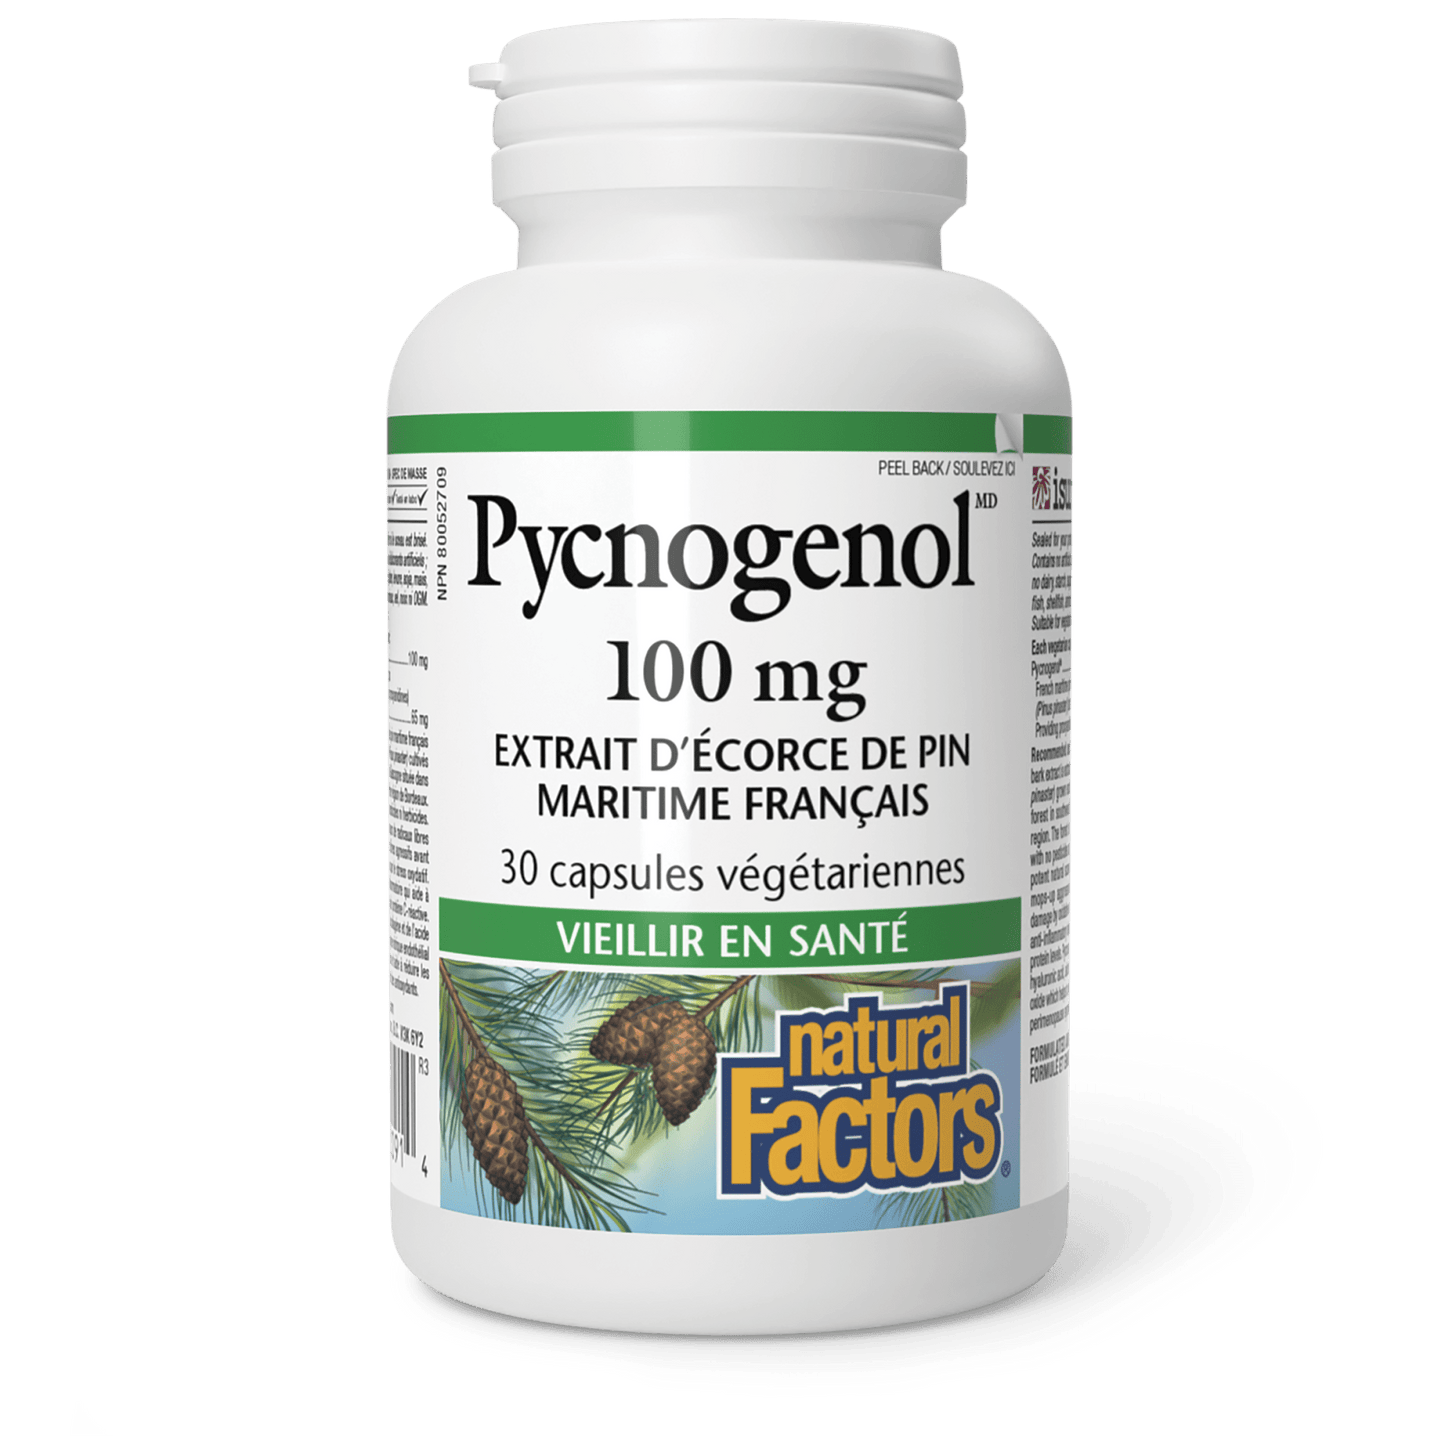 Pycnogenol 100 mg, Natural Factors|v|image|2091